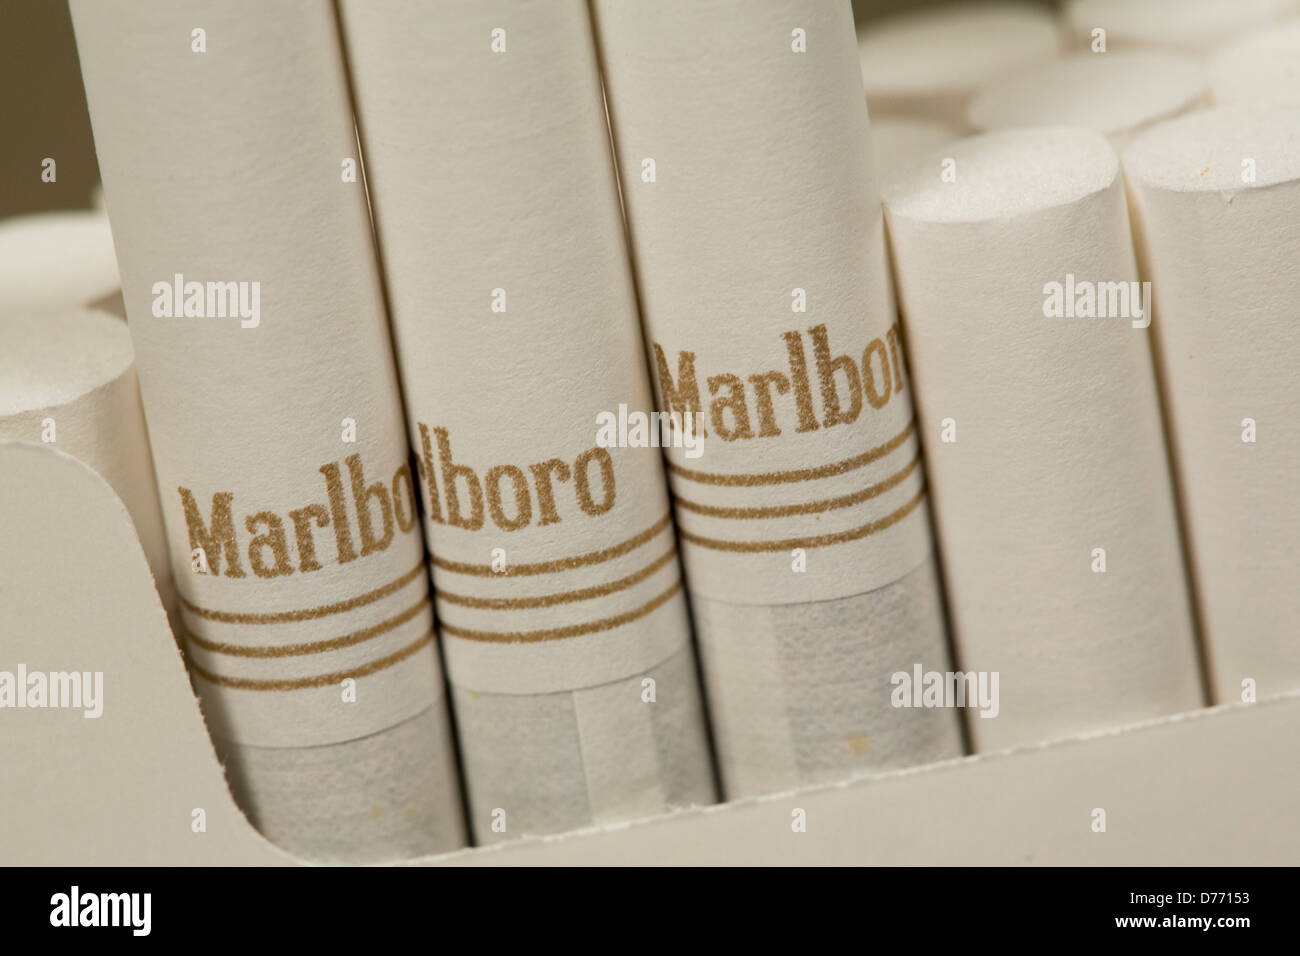 Un paquet de cigarettes Marlboro Gold. Banque D'Images